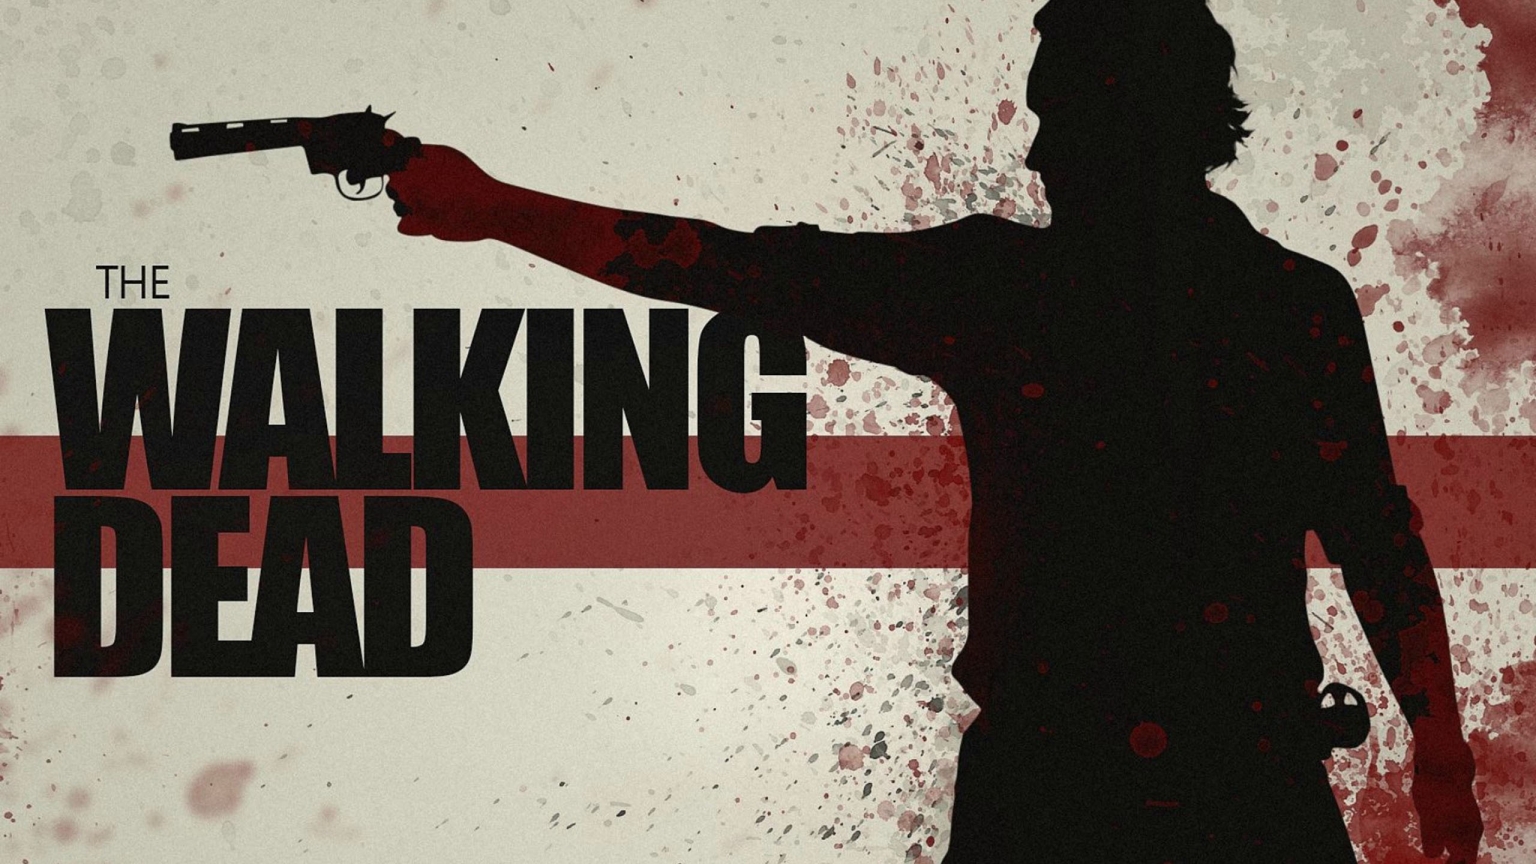 The Walking Dead Gun Poster for 1536 x 864 HDTV resolution